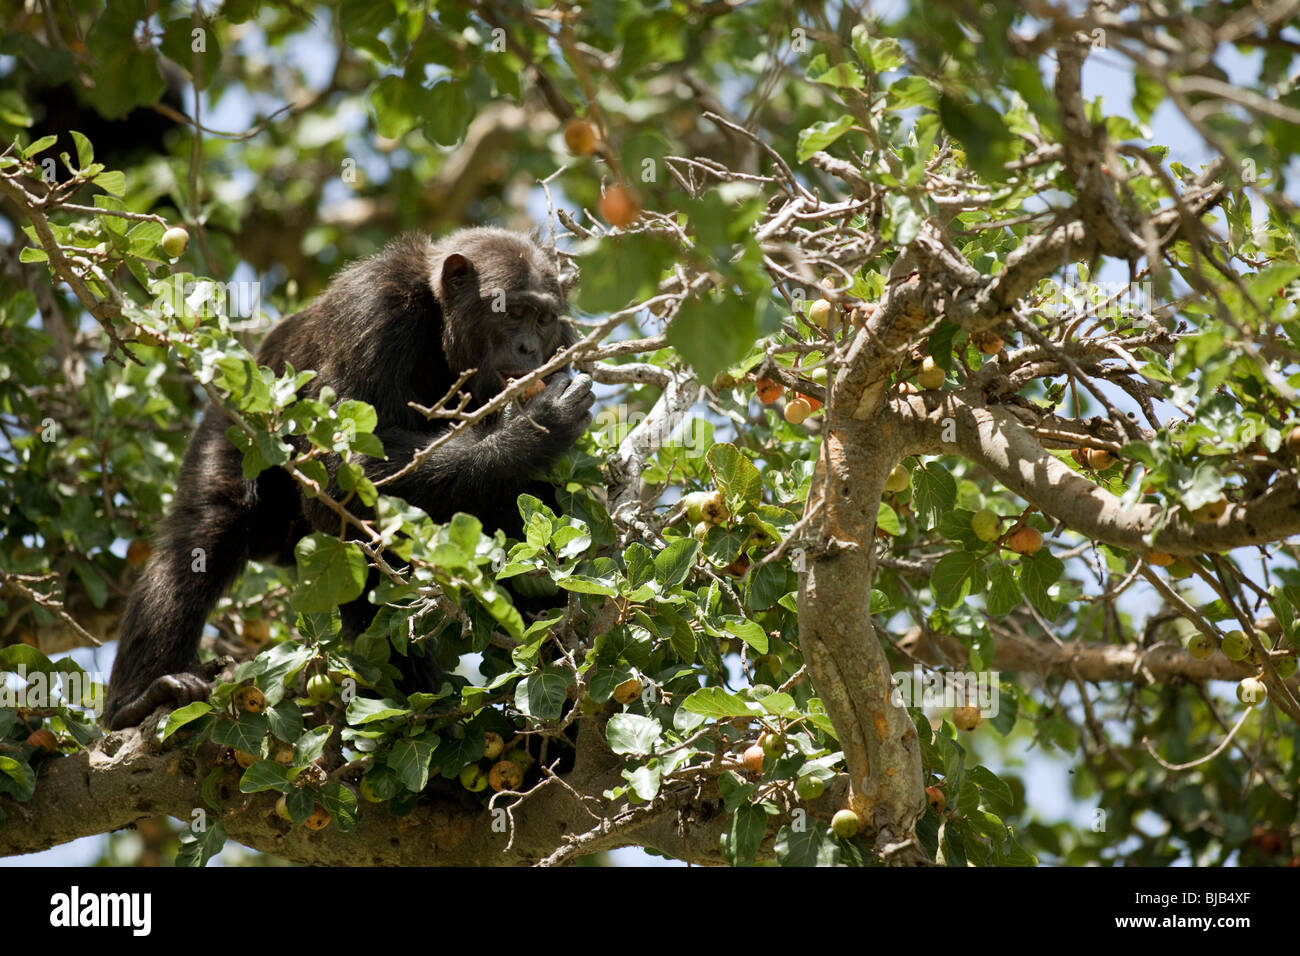 Lumumba, comer higos de una manera de árbol en la sabana, que él y los chimpancés se cruzaron sobre el terreno, con gran riesgo de depredación Foto de stock